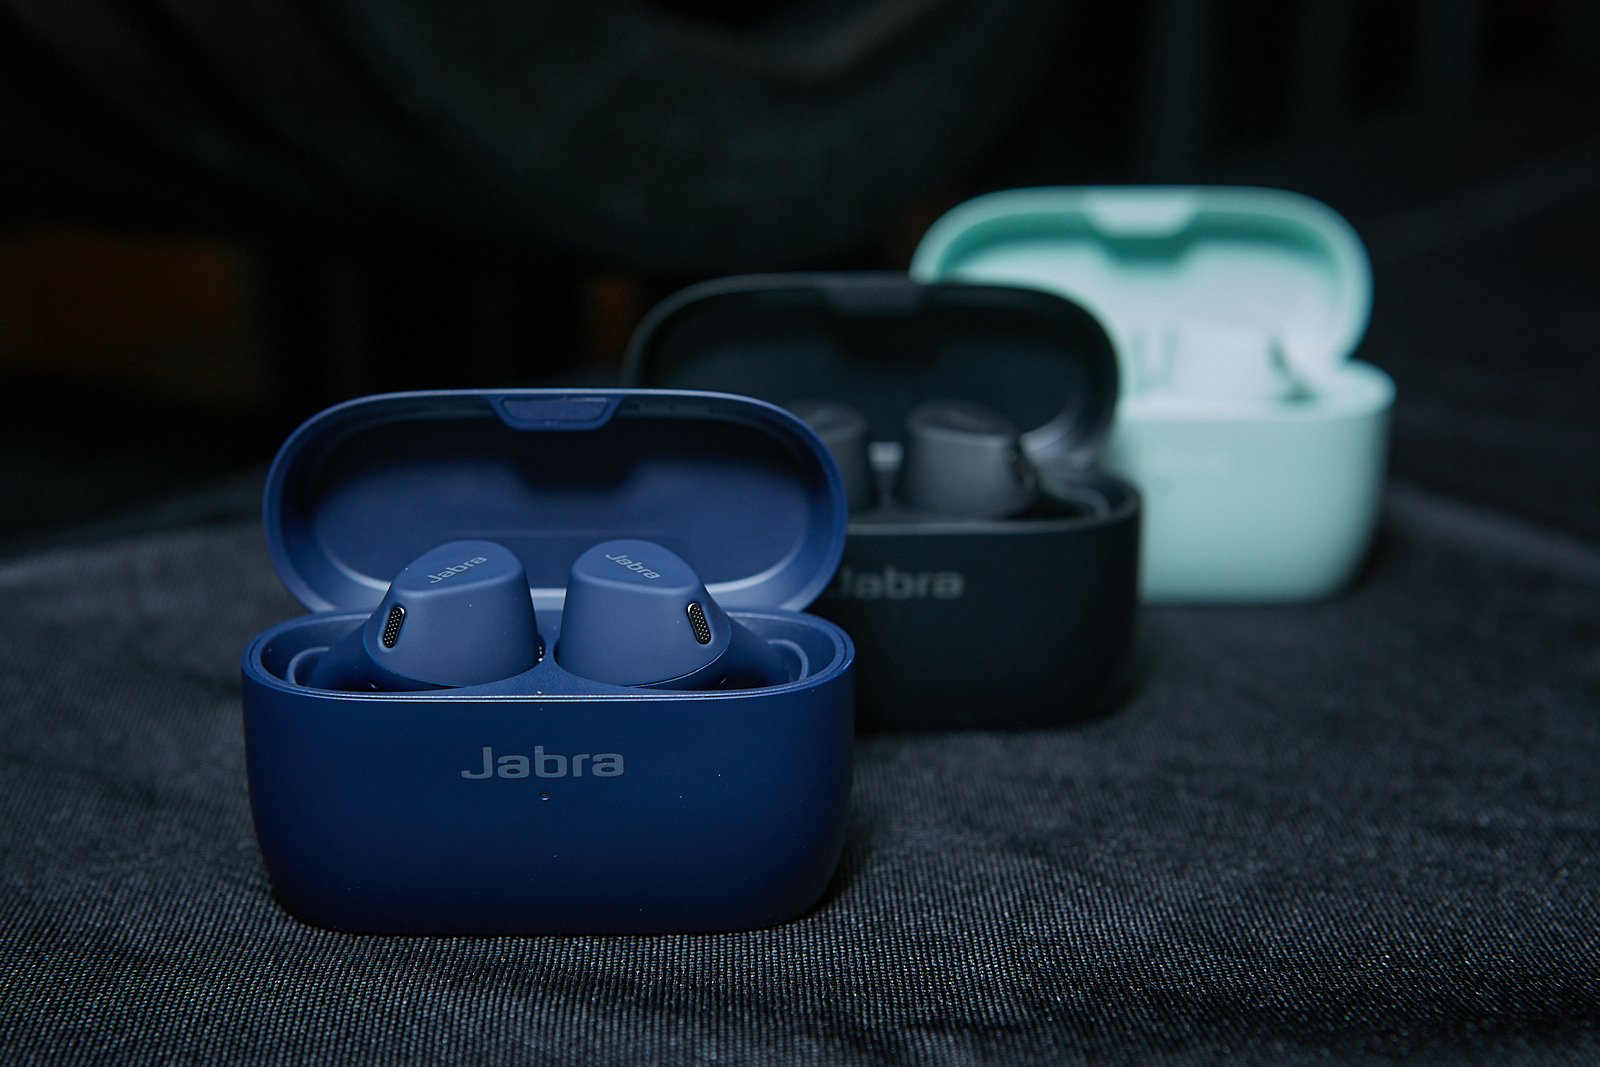 陳信安推薦 Jabra Elite 4 Active平價真無線藍芽耳機，舒適貼合、防水功能，價格平價。 - Jabra tws真無線藍牙耳機, 真無線運動藍芽耳機, 運動藍芽耳機, Jabra運動藍芽耳機, Jabra 真無線藍牙耳機ptt, Jabra 真無線藍牙耳機2022, Jabra 真無線藍牙耳機定義, Jabra 真無線藍牙耳機ptt 2021, Jabra 藍芽耳機推薦平價, Elite 4, Jabra 小米無線耳機, Jabra 耳塞式真無線藍牙耳機, 真無線藍牙耳機2022, 真無線藍牙耳機定義, 真無線藍牙耳機ptt 2021, tws真無線藍牙耳機, 小米無線耳機, 耳塞式真無線藍牙耳機, 運動真無線藍芽耳機, 防水, Jabra, 真無線藍牙耳機ptt, 藍芽耳機推薦平價, Jabra Elite 4, Active, 陳信安, 防水 真無線藍芽耳機, 平價真無線藍芽耳機, 主動降噪, 陳信安 Jabra, 陳信安耳機, 陳信安藍芽耳機, Jabra真無線藍芽耳機, Jabra 藍芽耳機 - 敗家達人推薦